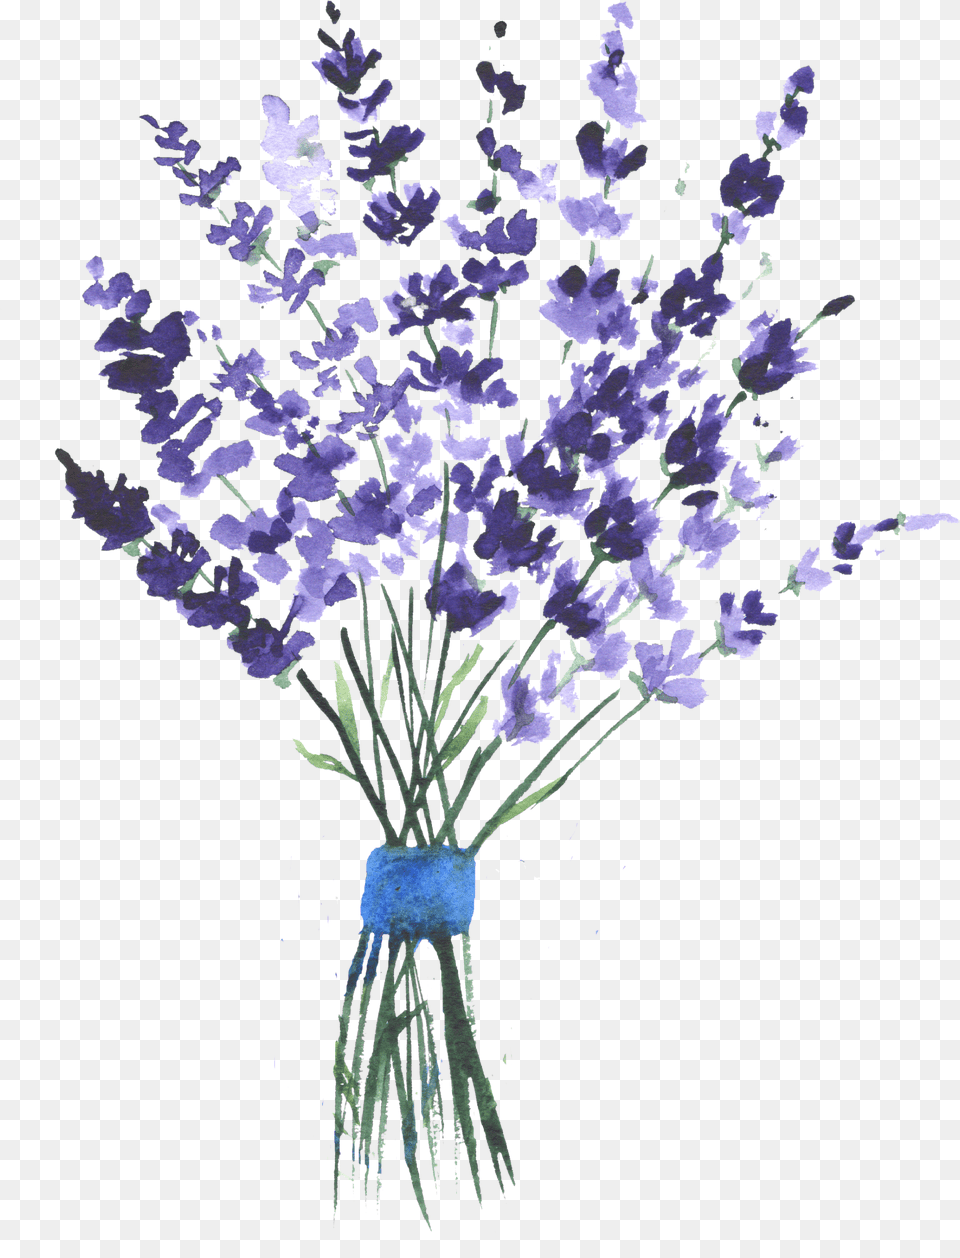 Lavender Watercolor Purple Flowers Watercolour Lavender, Flower, Plant, Flower Arrangement, Art Free Transparent Png